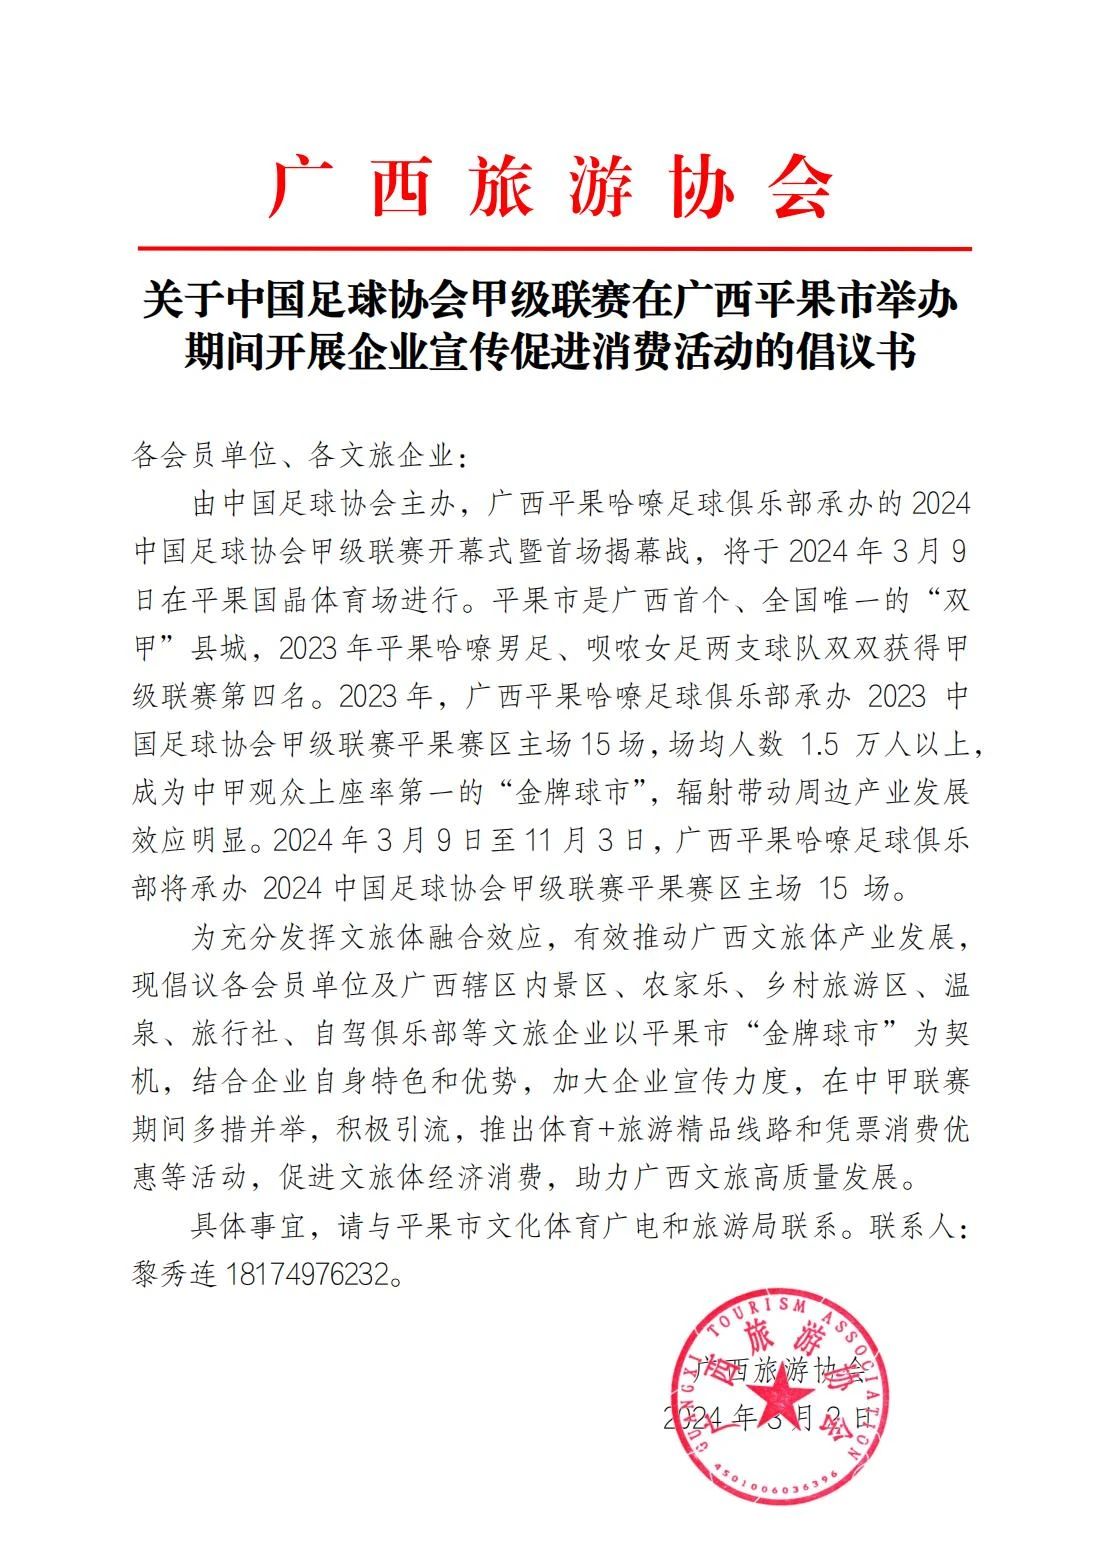 广西旅游协会关于中国足球协会甲级联赛在广西平果市举办期间开展企业宣传促进消费活动的倡议书